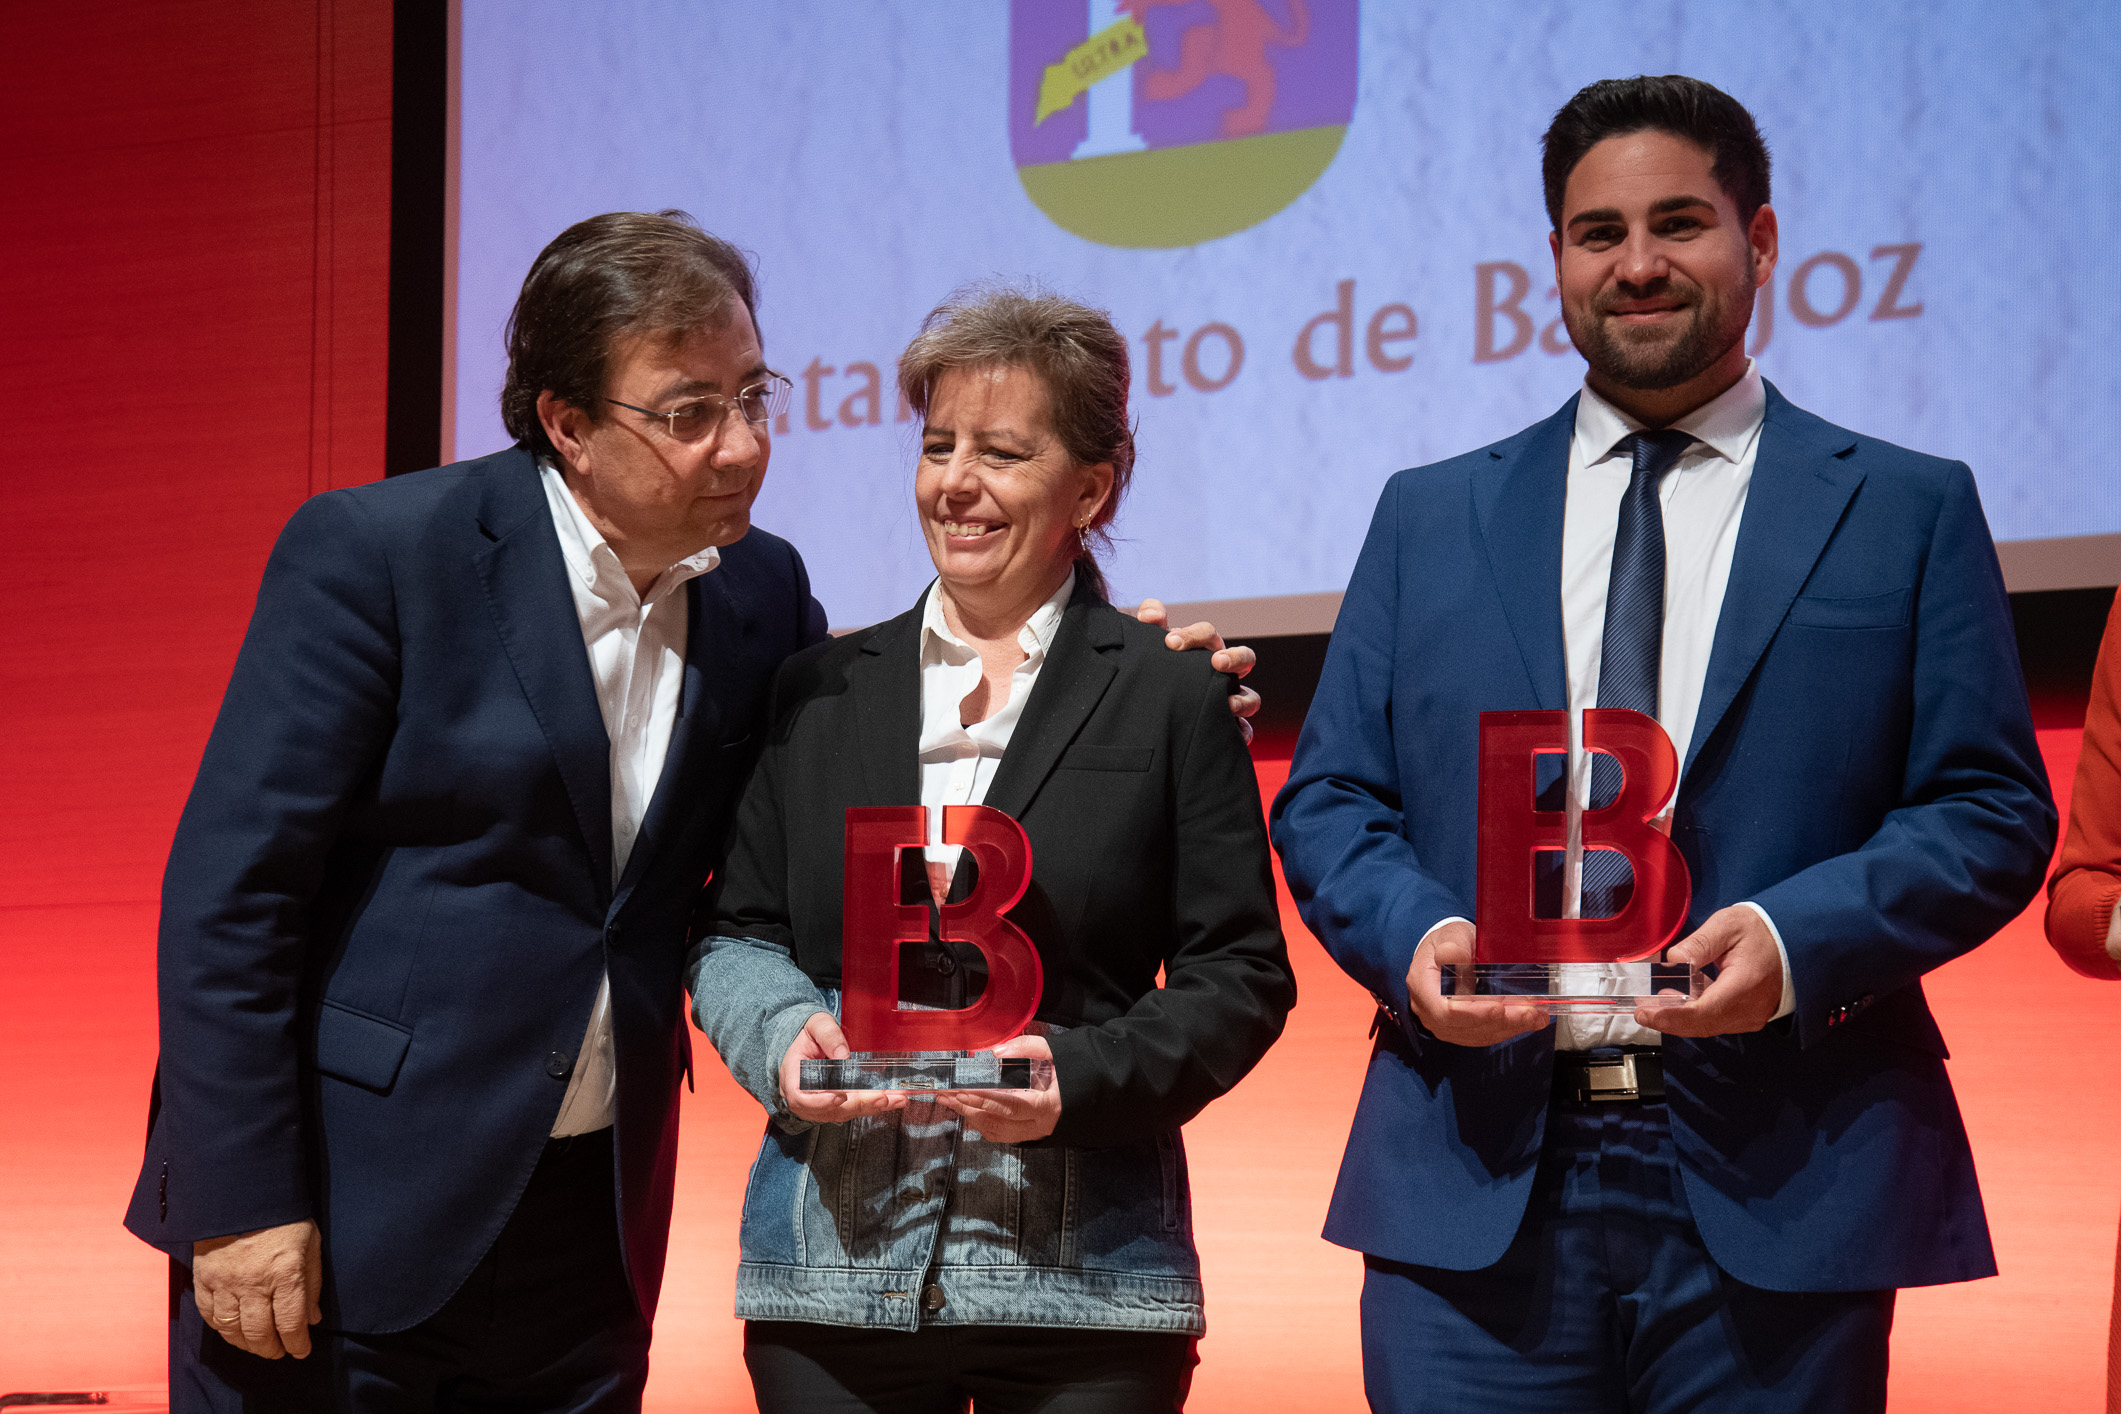 Premios La Crónica de Badajoz foto 13